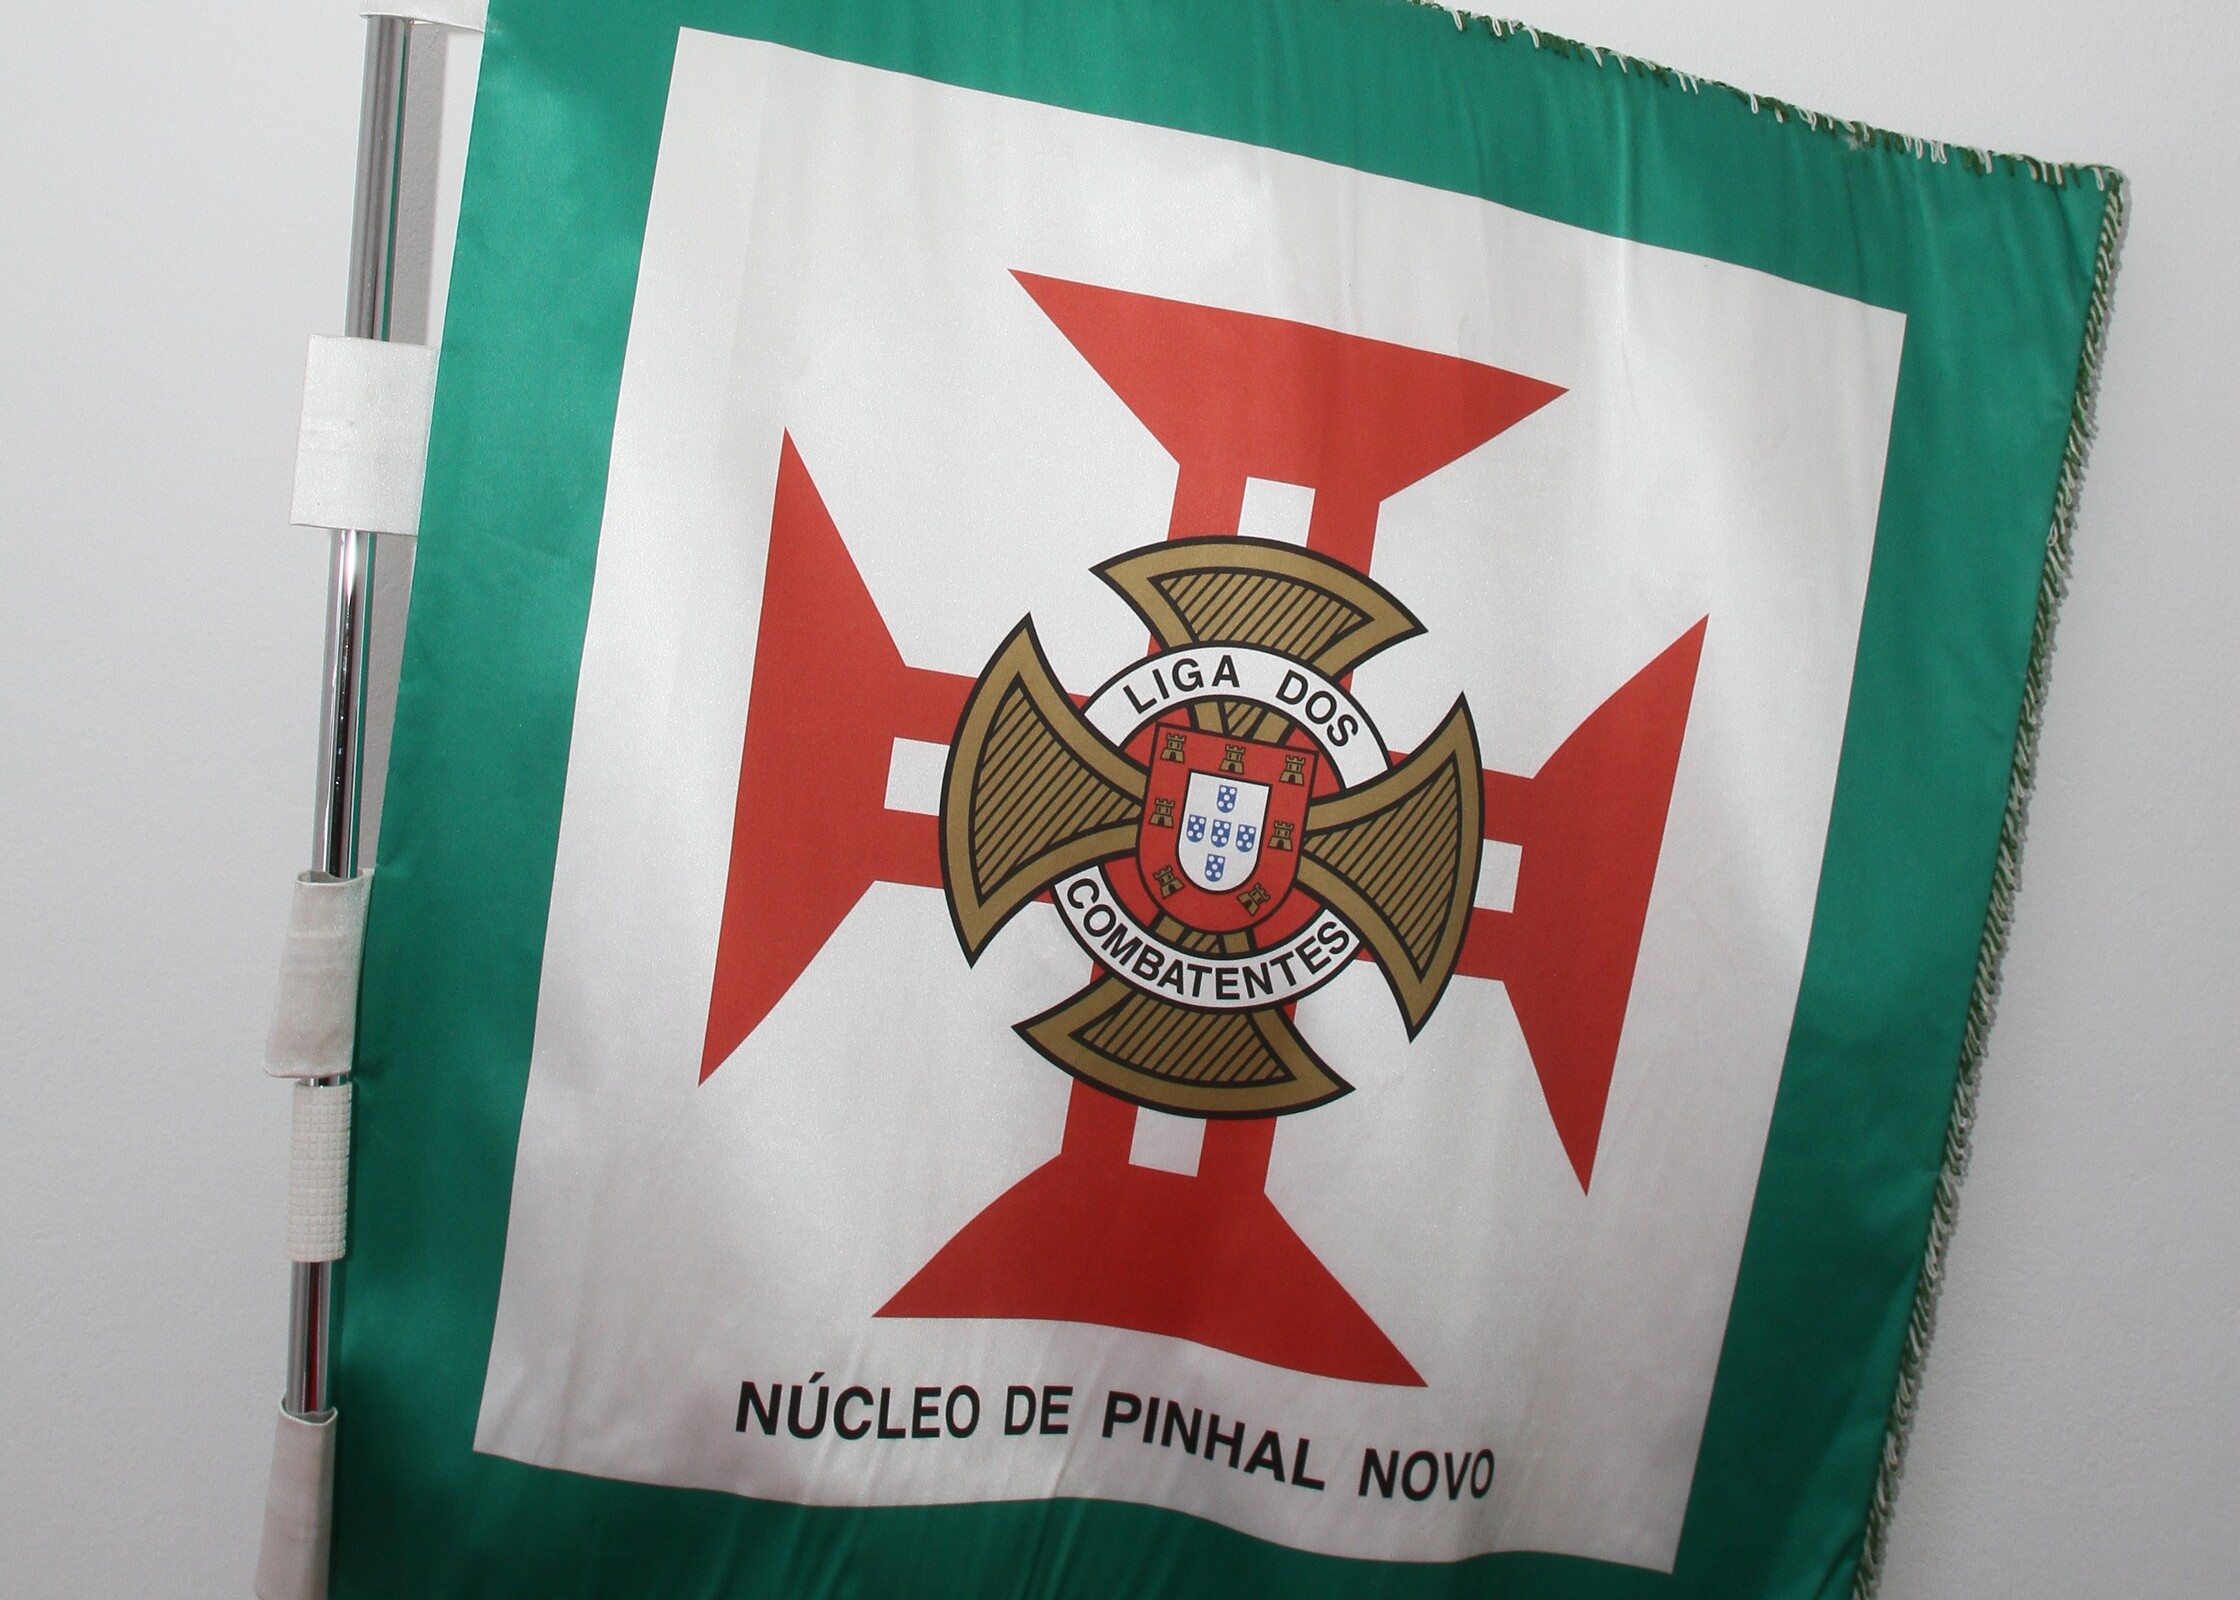 Município apoia Núcleo de Pinhal Novo/Liga dos Combatentes